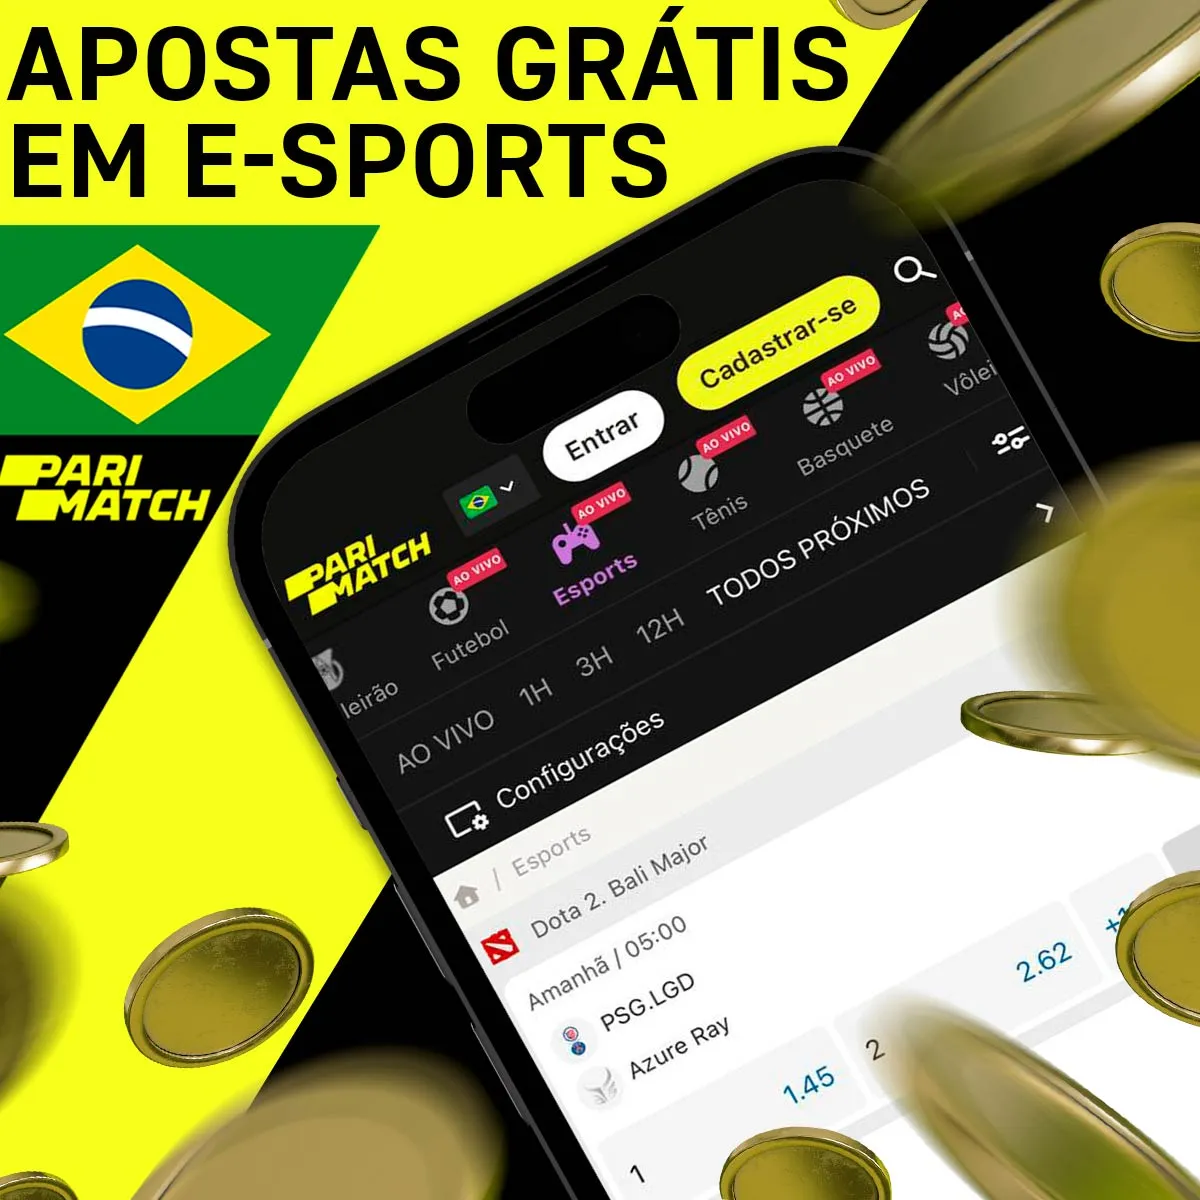 Apostas grátis em esportes cibernéticos para usuários do aplicativo móvel Android da casa de apostas Parimatch no Brasil